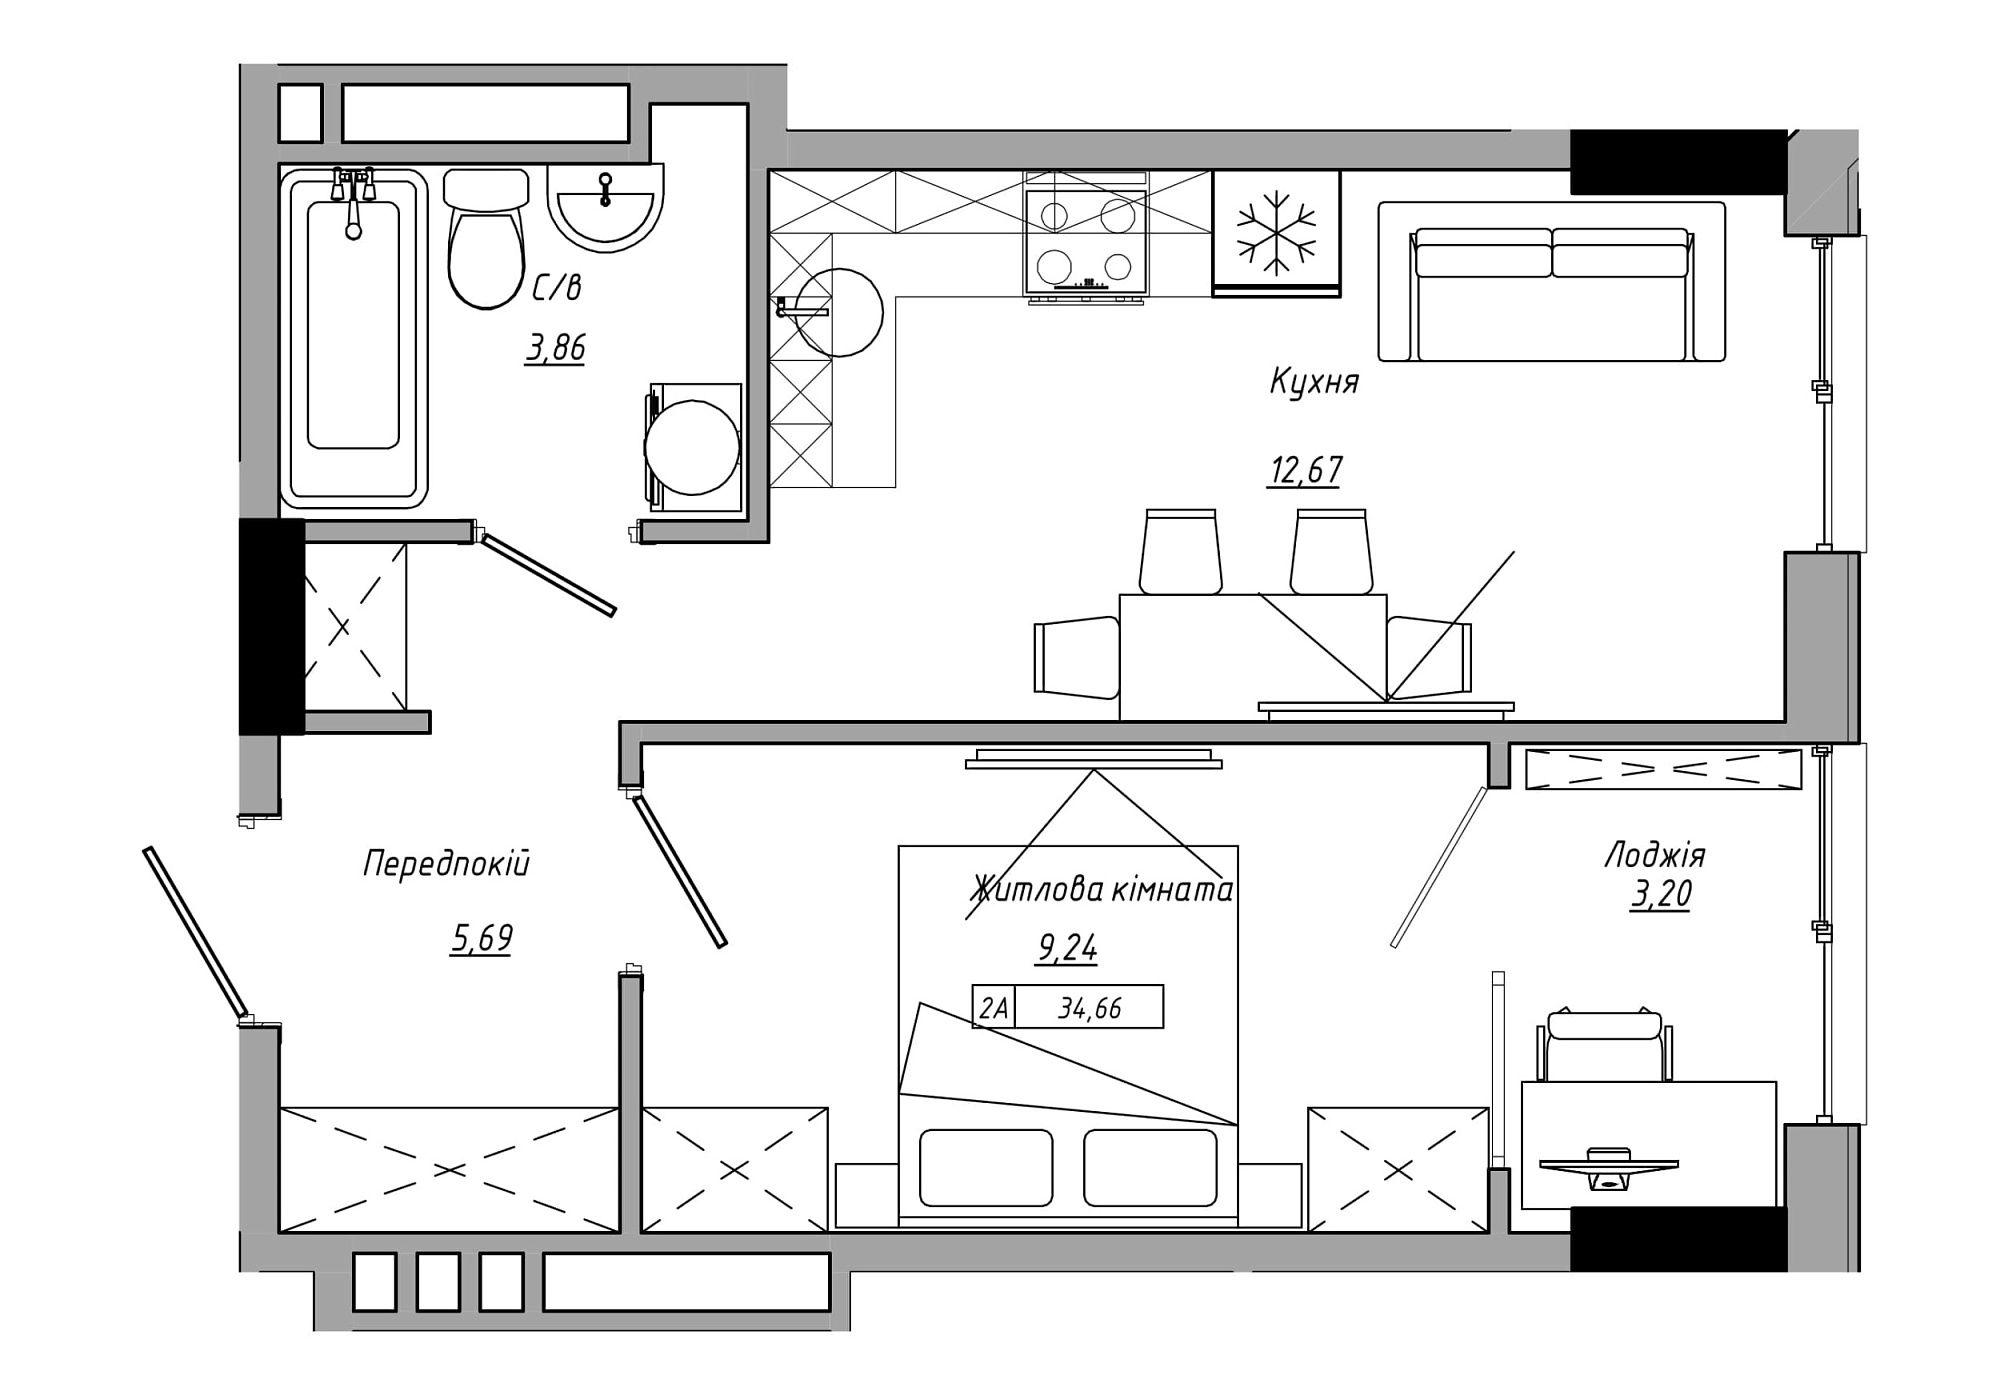 Планування 1-к квартира площею 34.66м2, AB-21-09/00002.